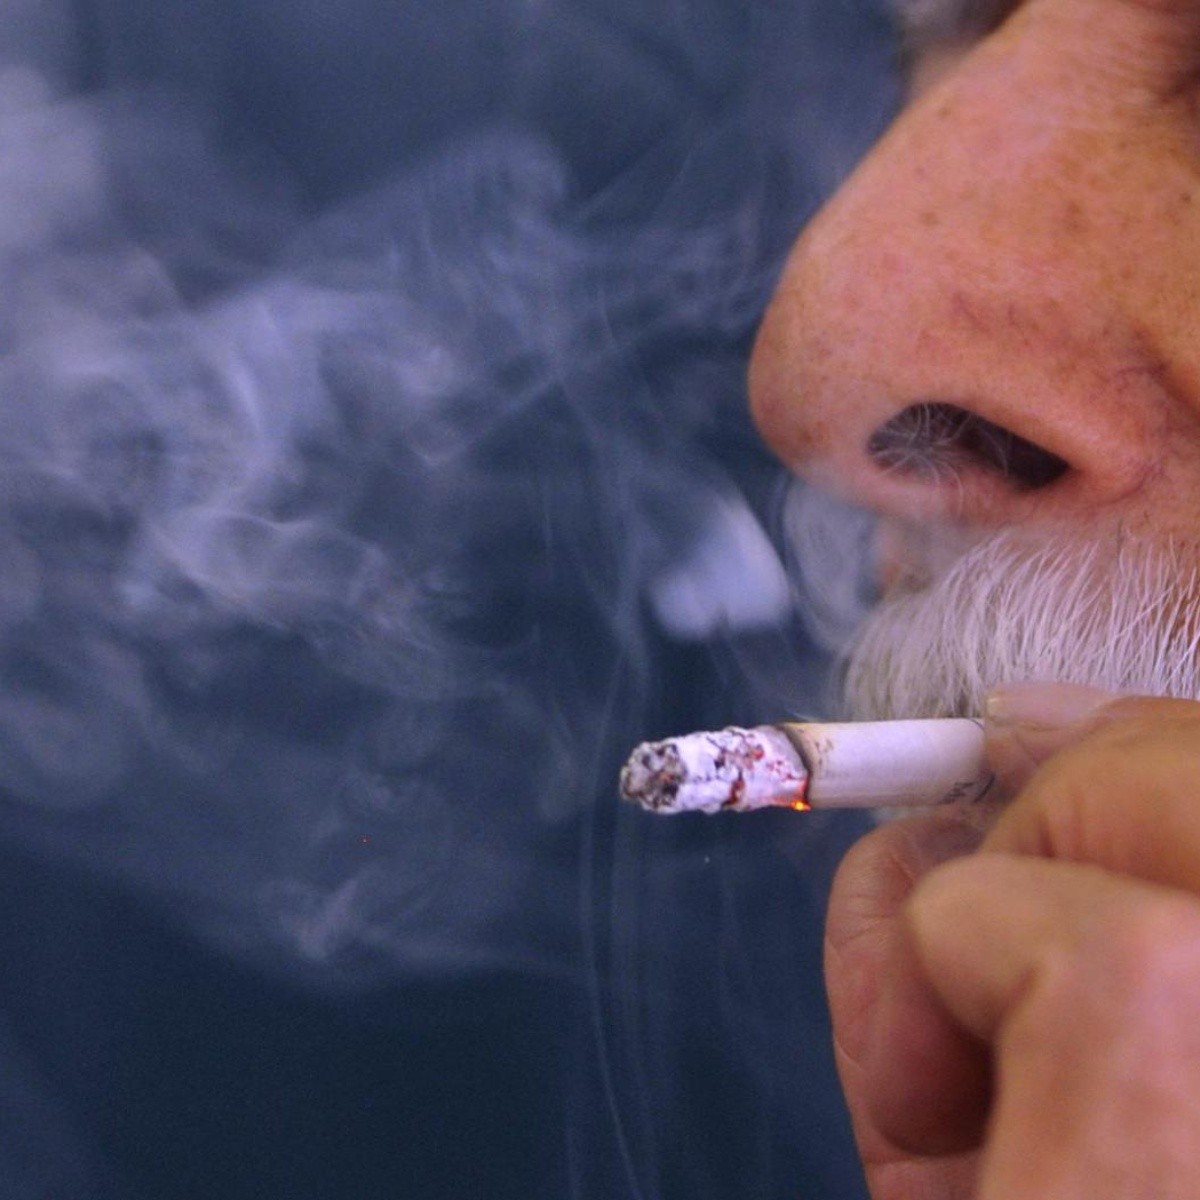 La venta de tabaco de liar crece un 63% y los cigarrillos siguen a la baja